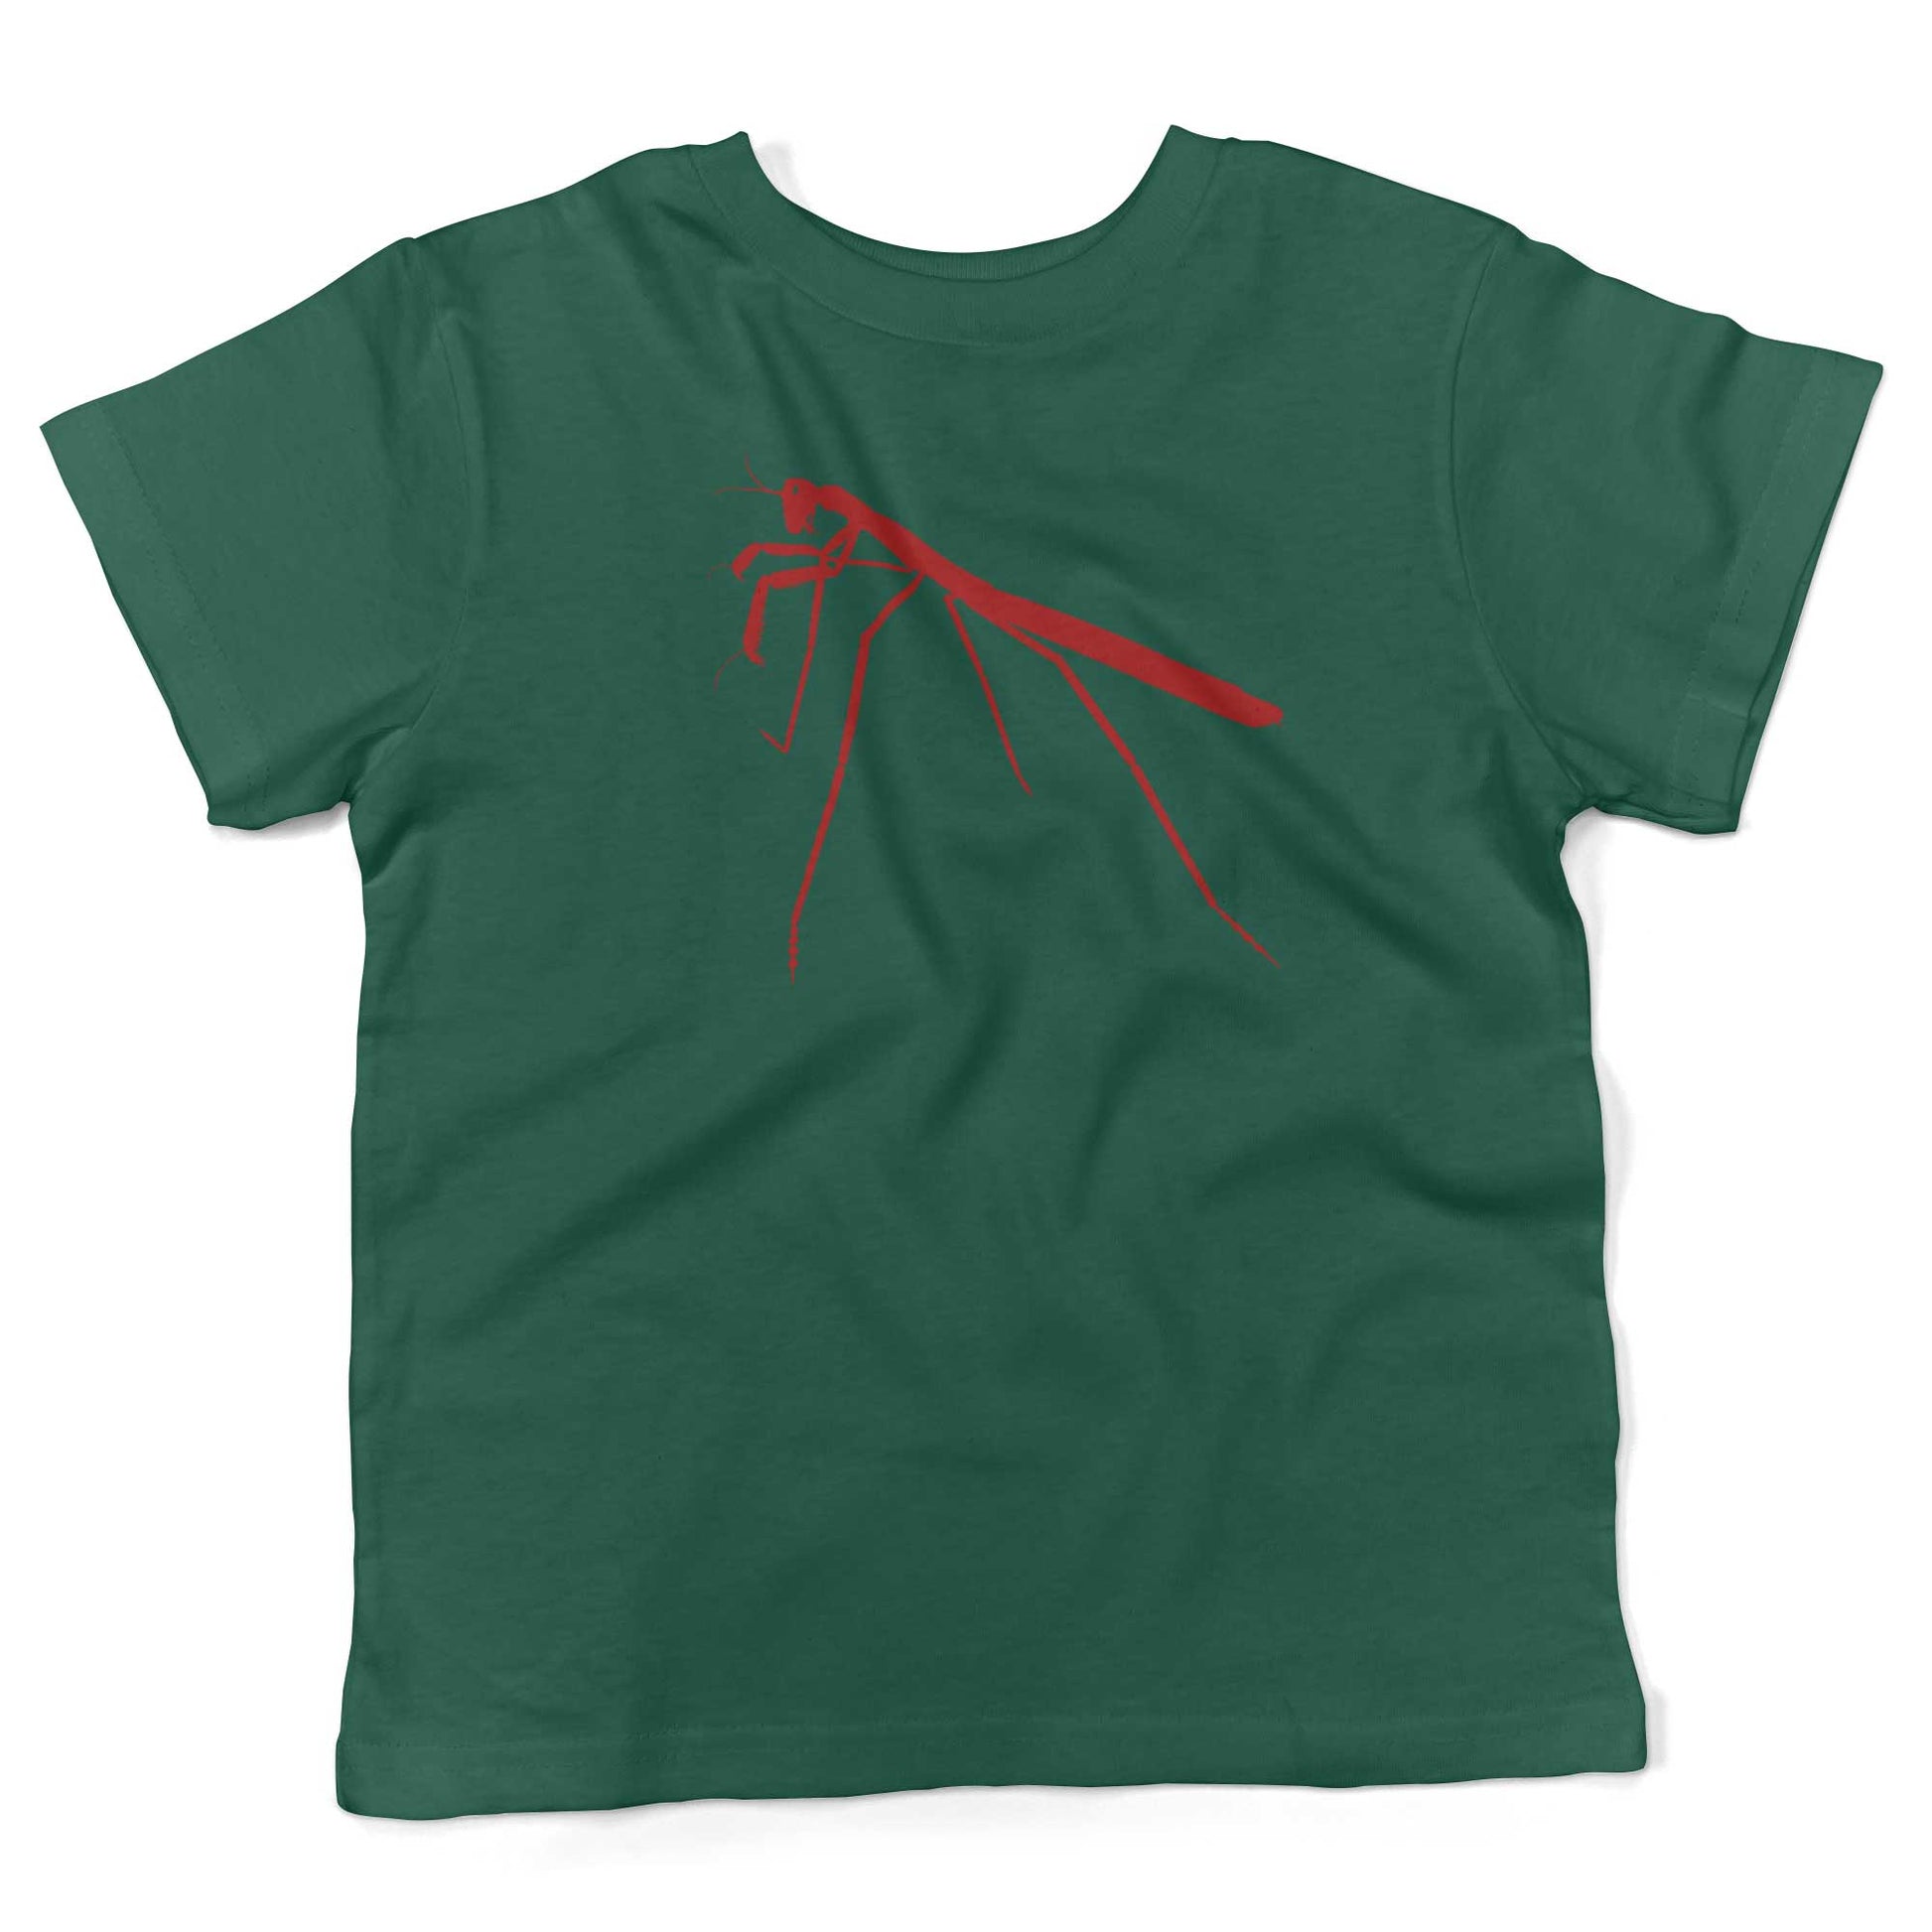 Praying Mantis Toddler Shirt-Kelly Green-2T